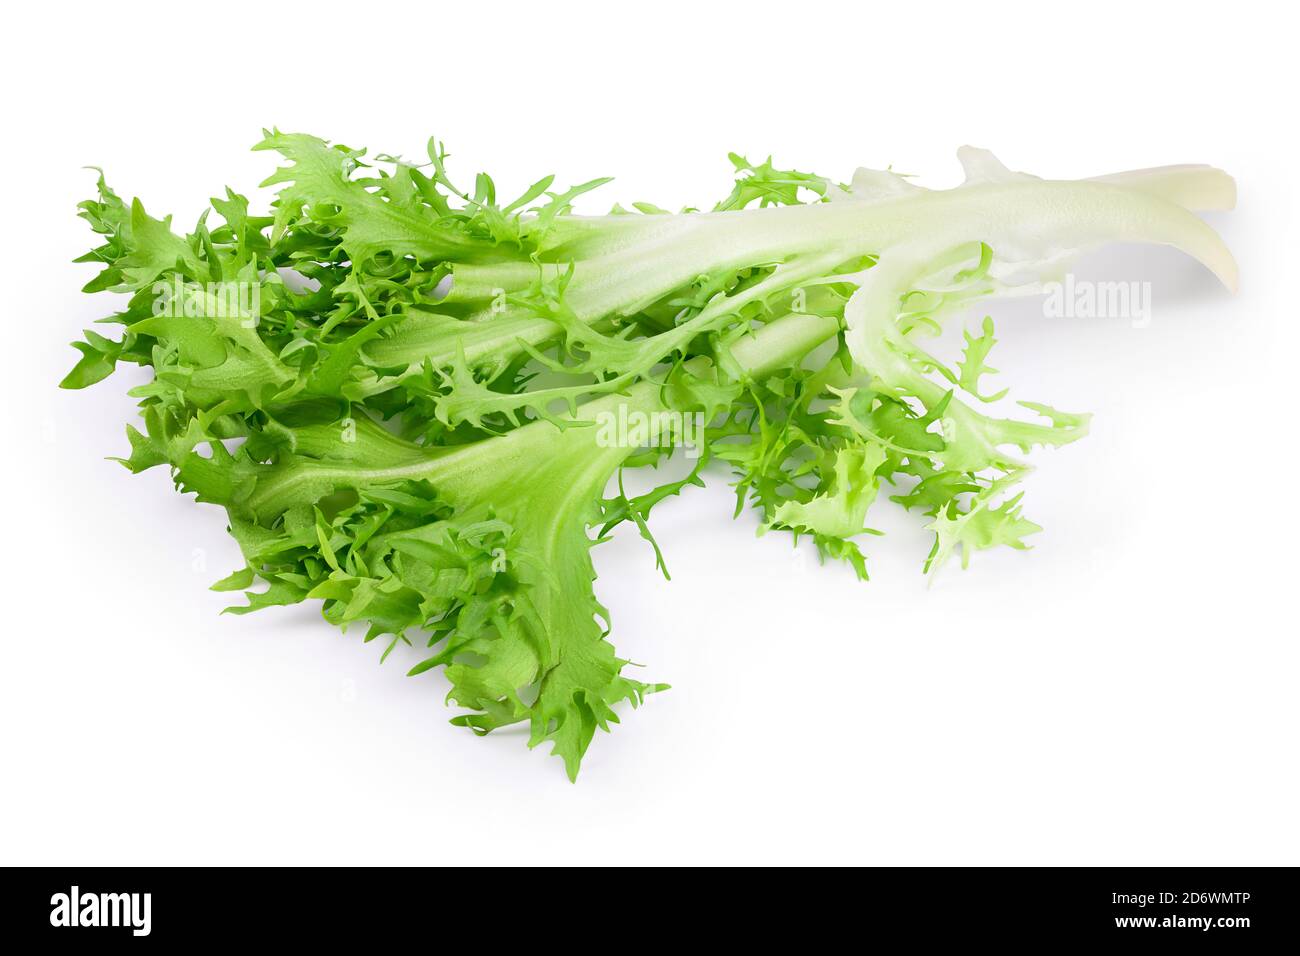 Frische grüne Blätter Endive Frisee Chicorée Salat isoliert auf Weißer Hintergrund mit Beschneidungspfad und voller Schärfentiefe Stockfoto